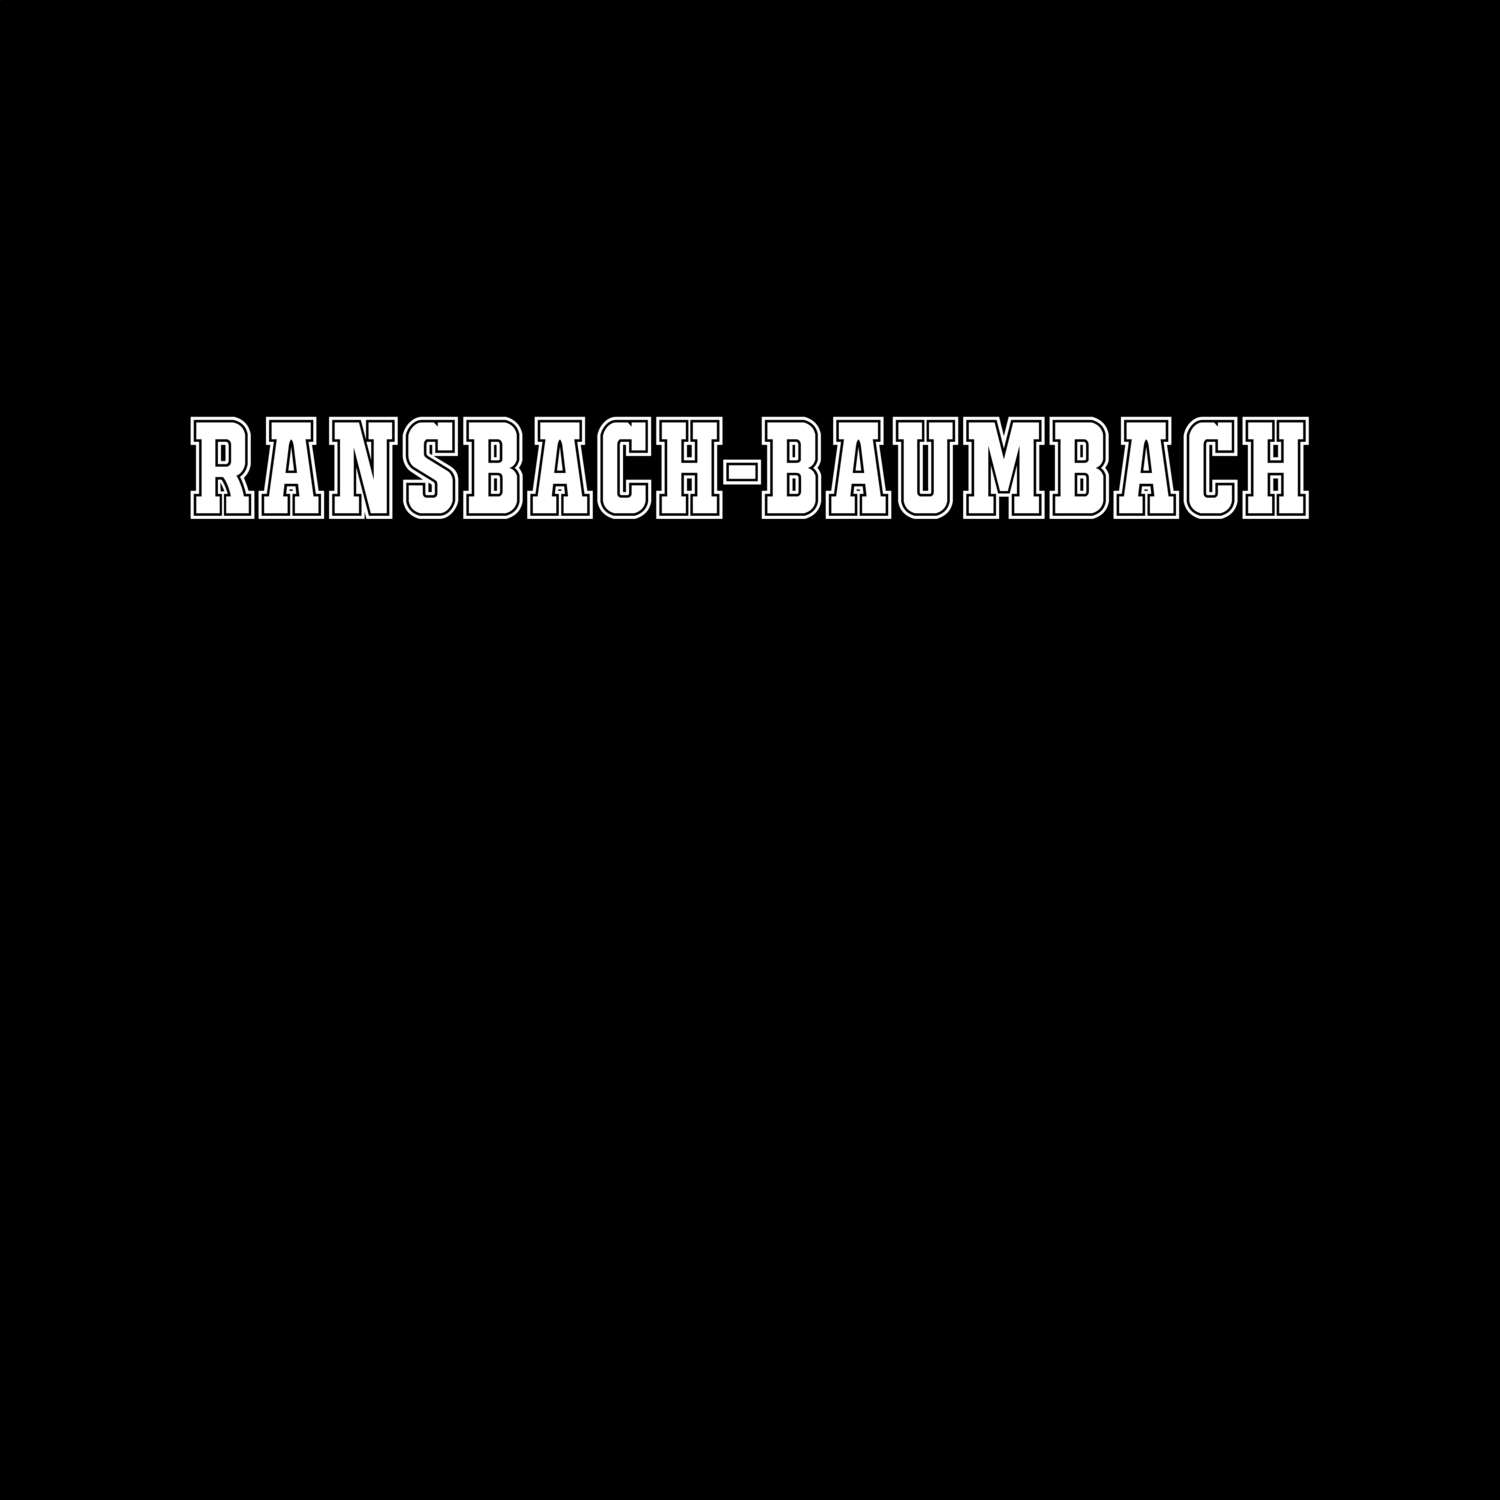 Ransbach-Baumbach T-Shirt »Classic«